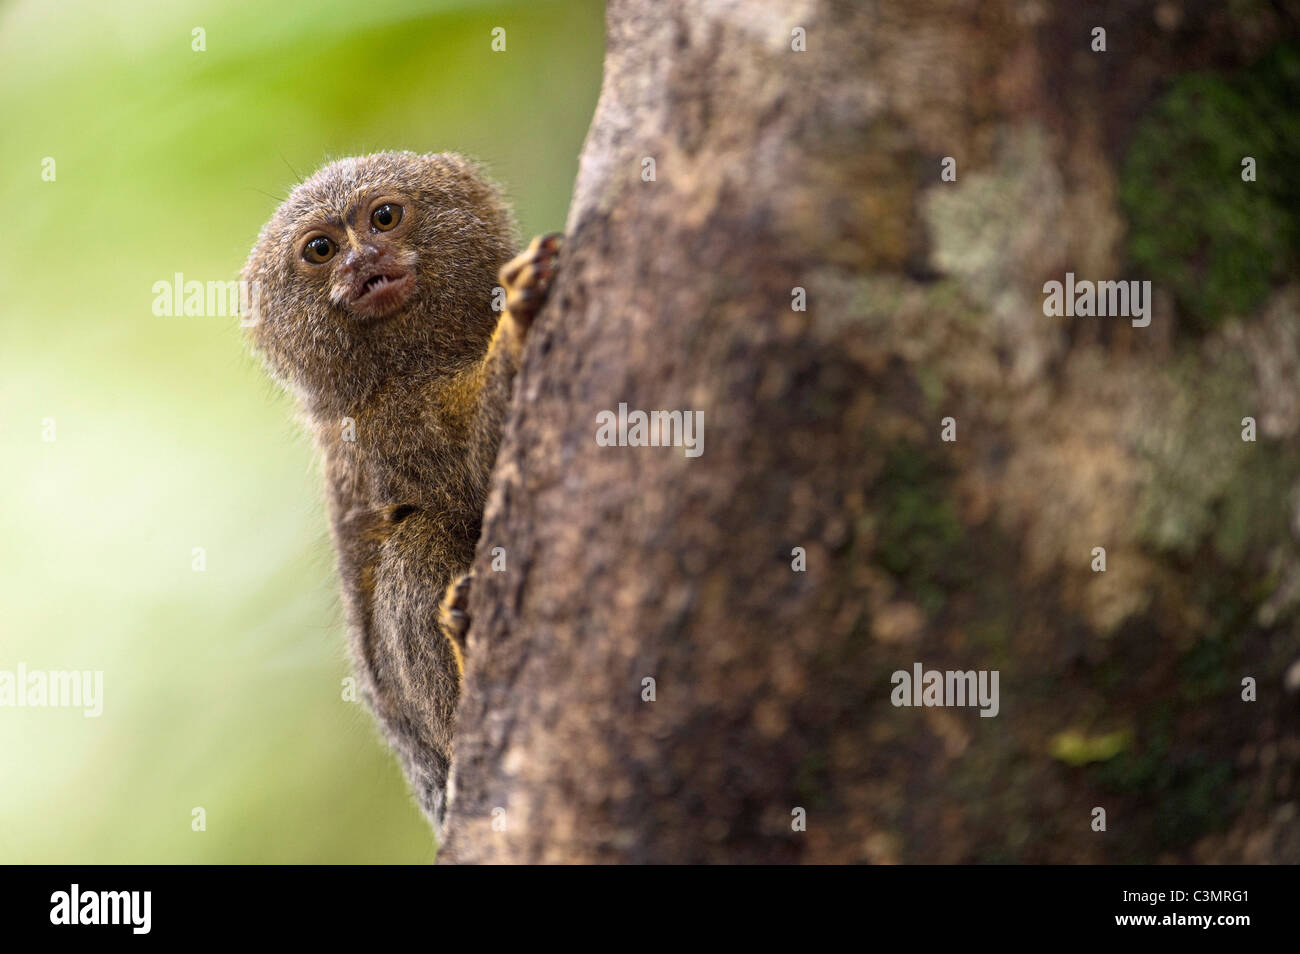 Ouistiti pygmée (Callithrix pygmaea, Cebuella pygmaea). Plus petit vrai singe dans le monde Banque D'Images